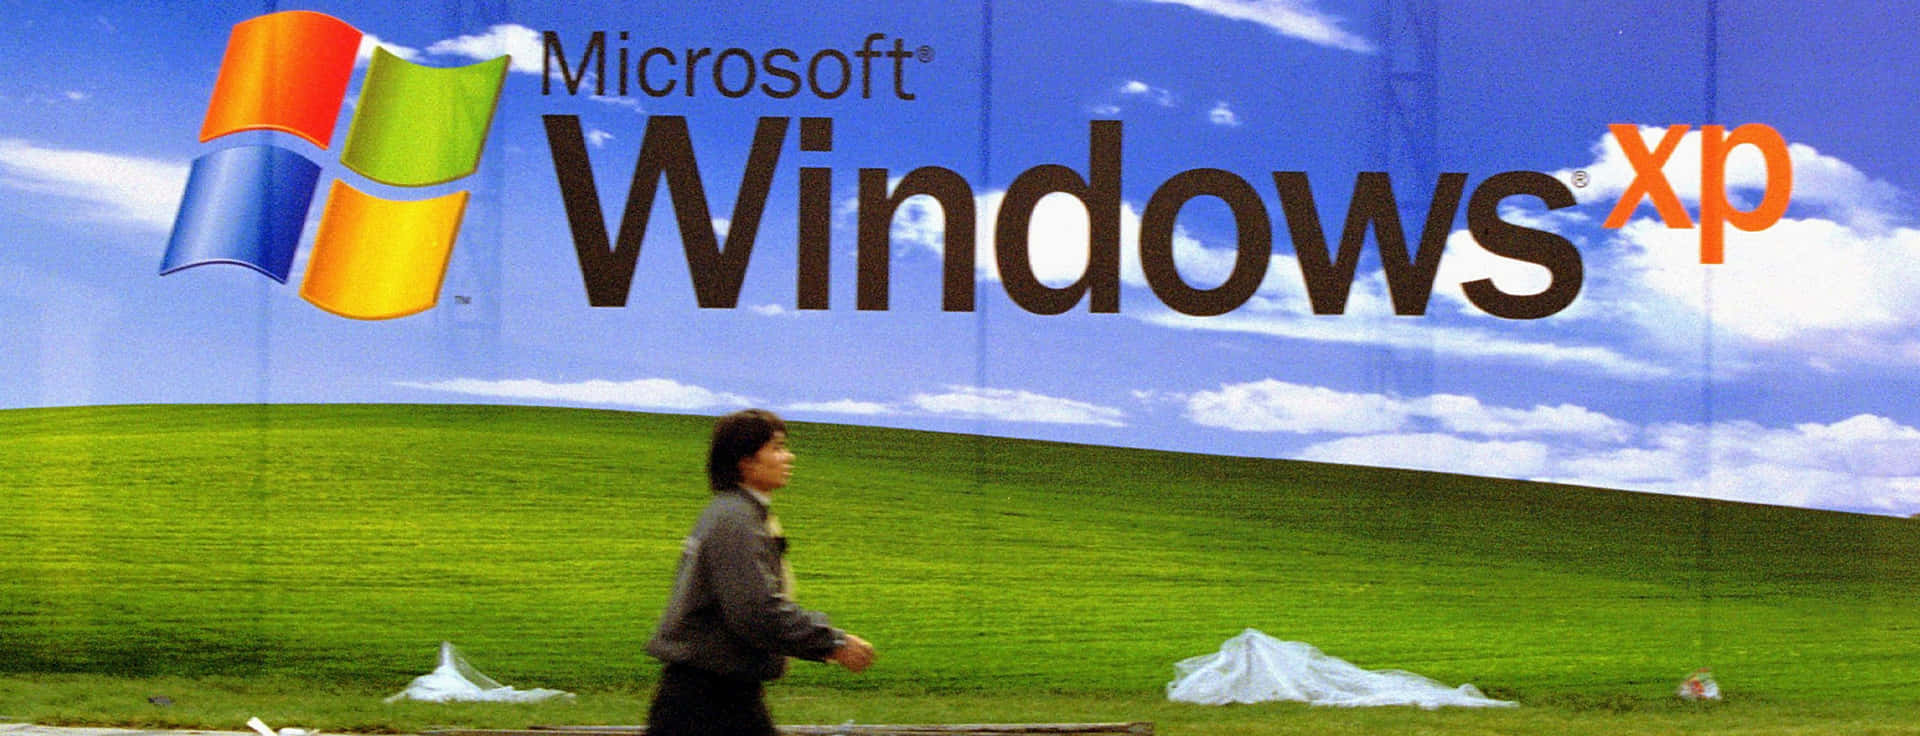 Microsoftwindows Xp Logo Wallpaper